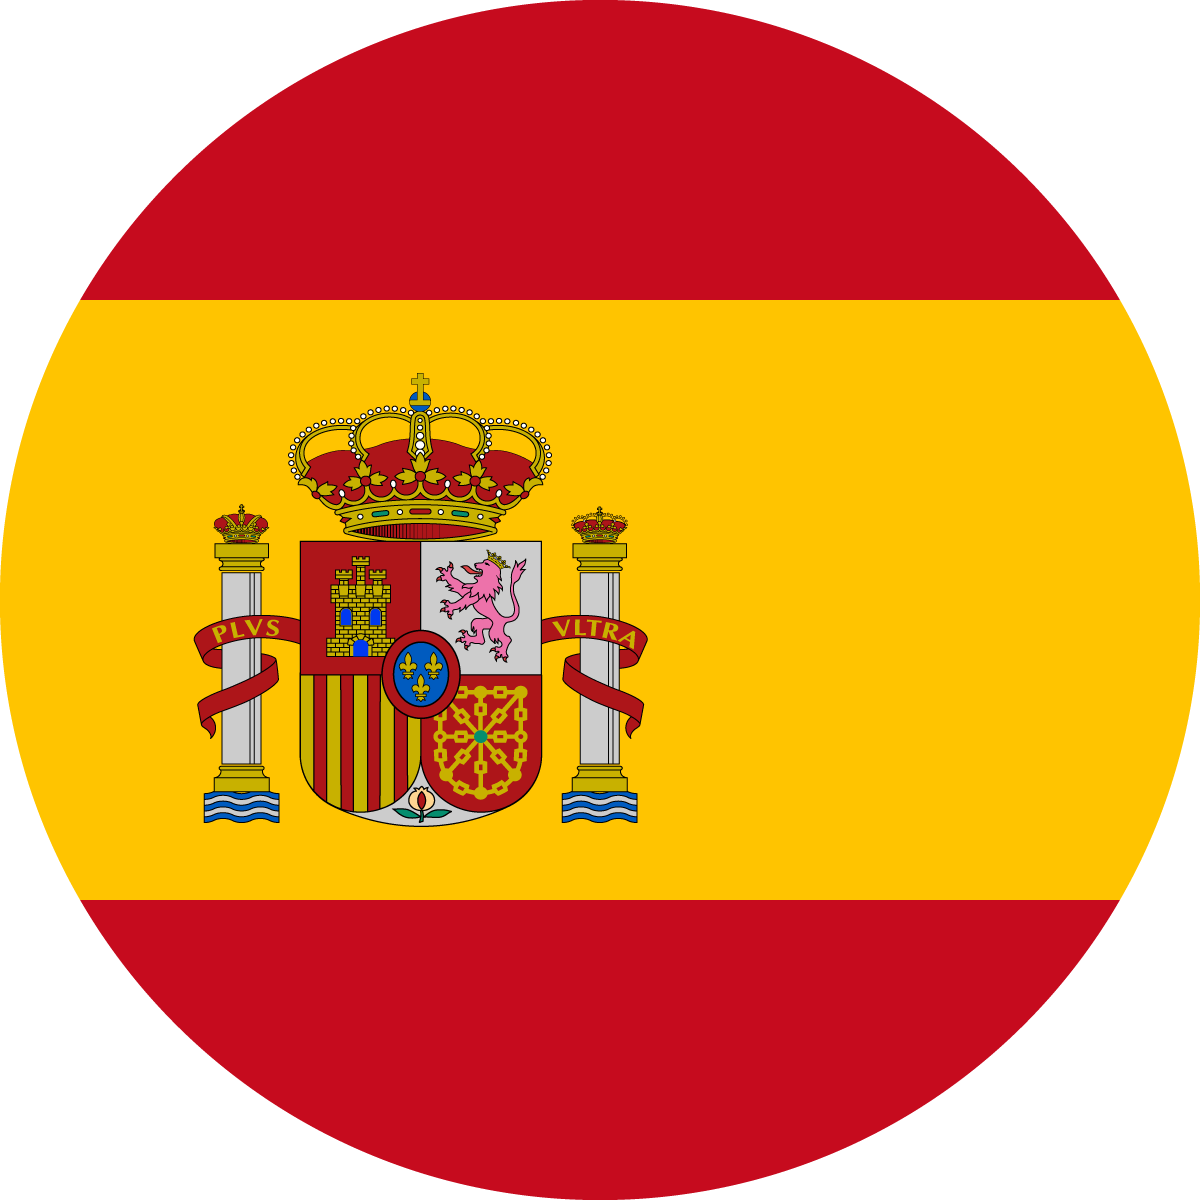 Copy of Copy of Copy of Copy of Copy of Spain